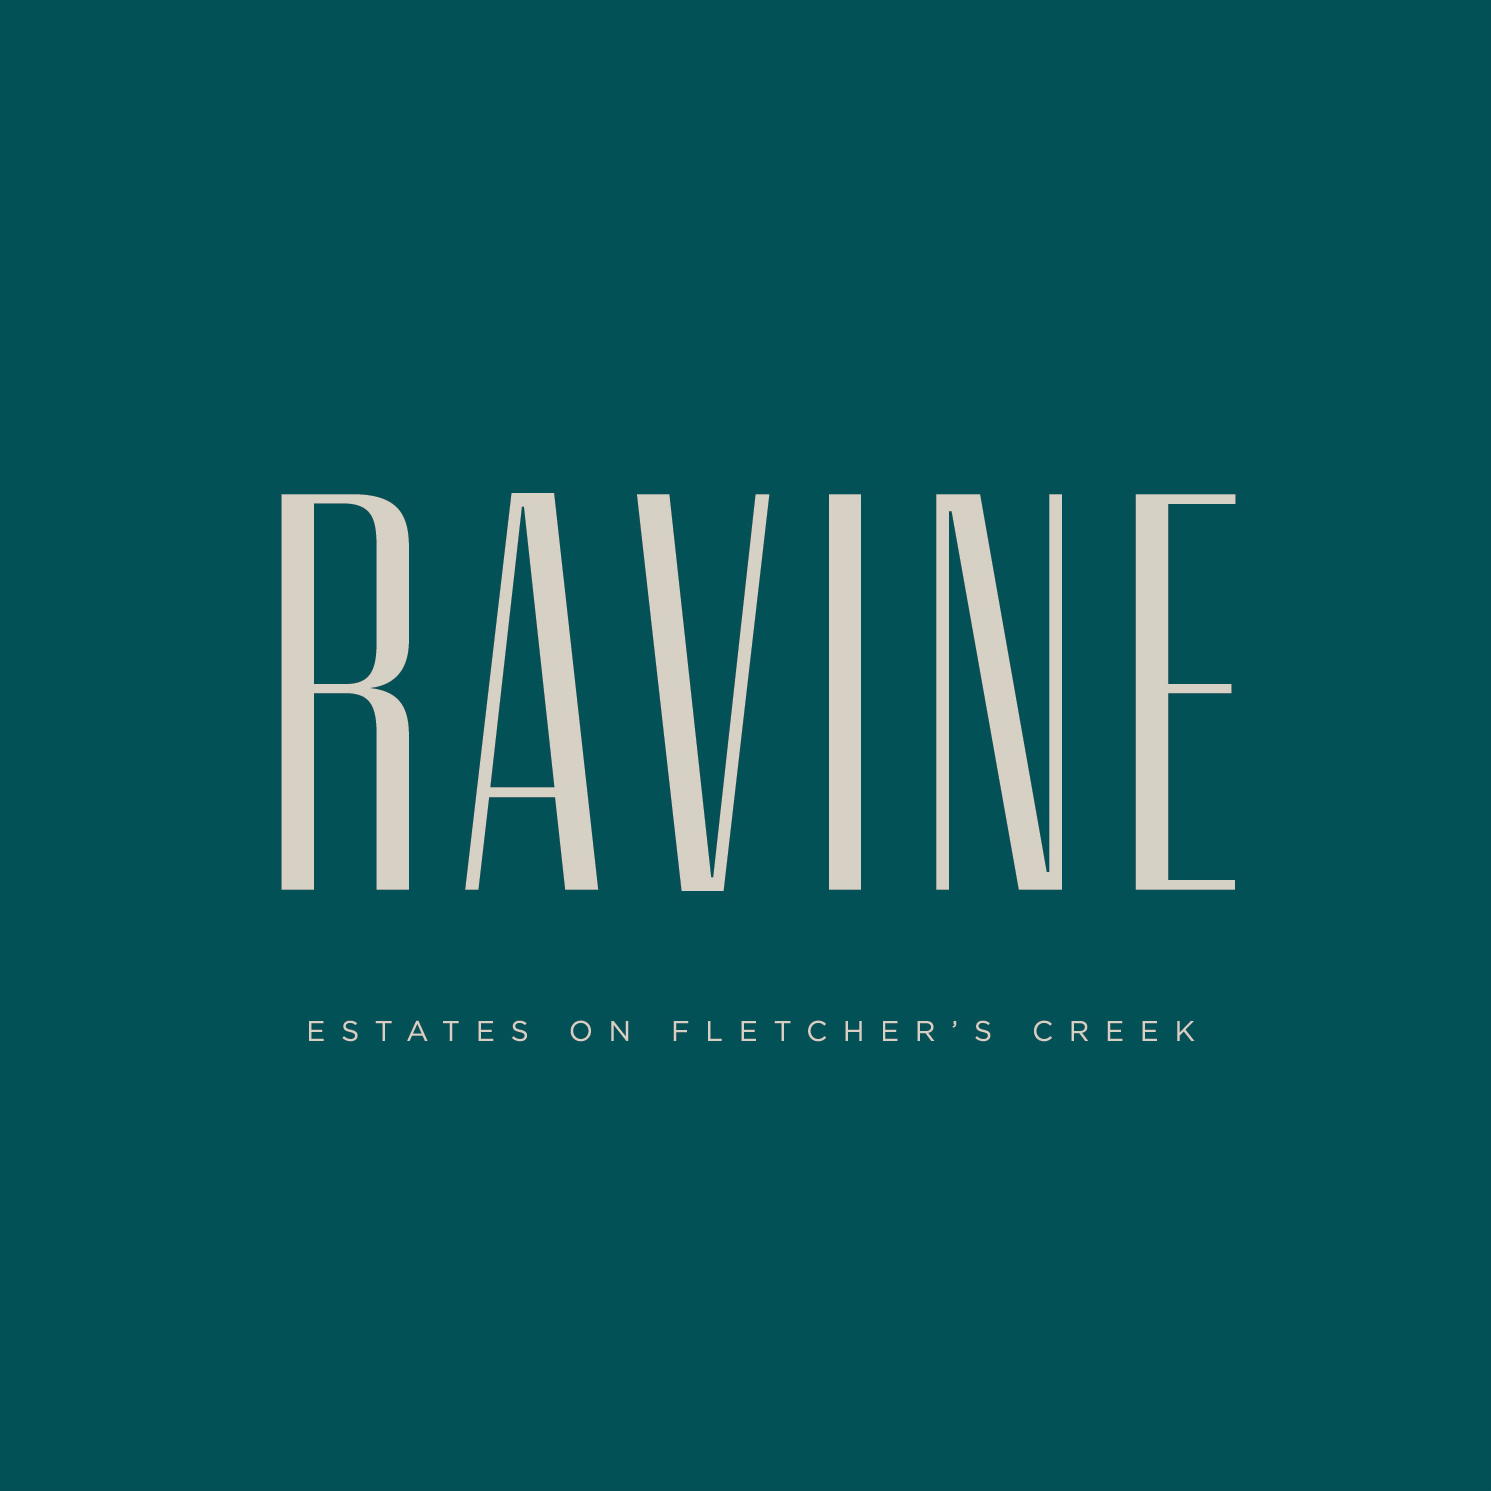 The Ravine Estates